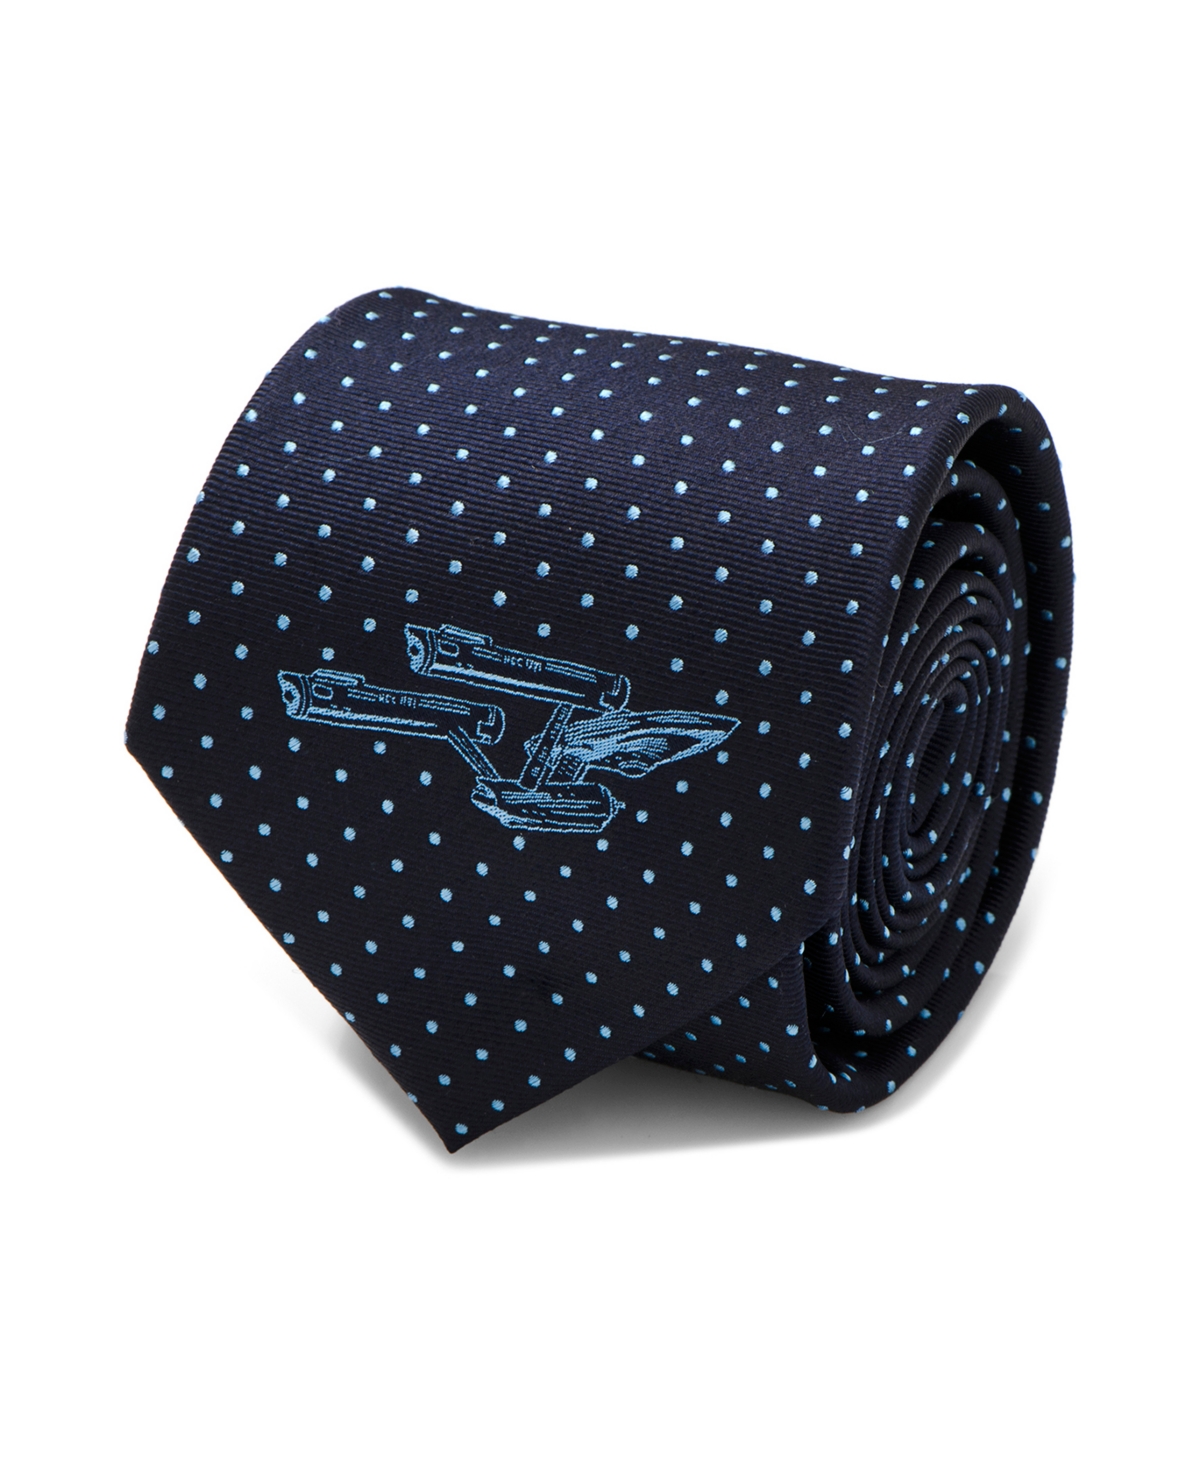 Enterprise Dot Men's Tie - Blue